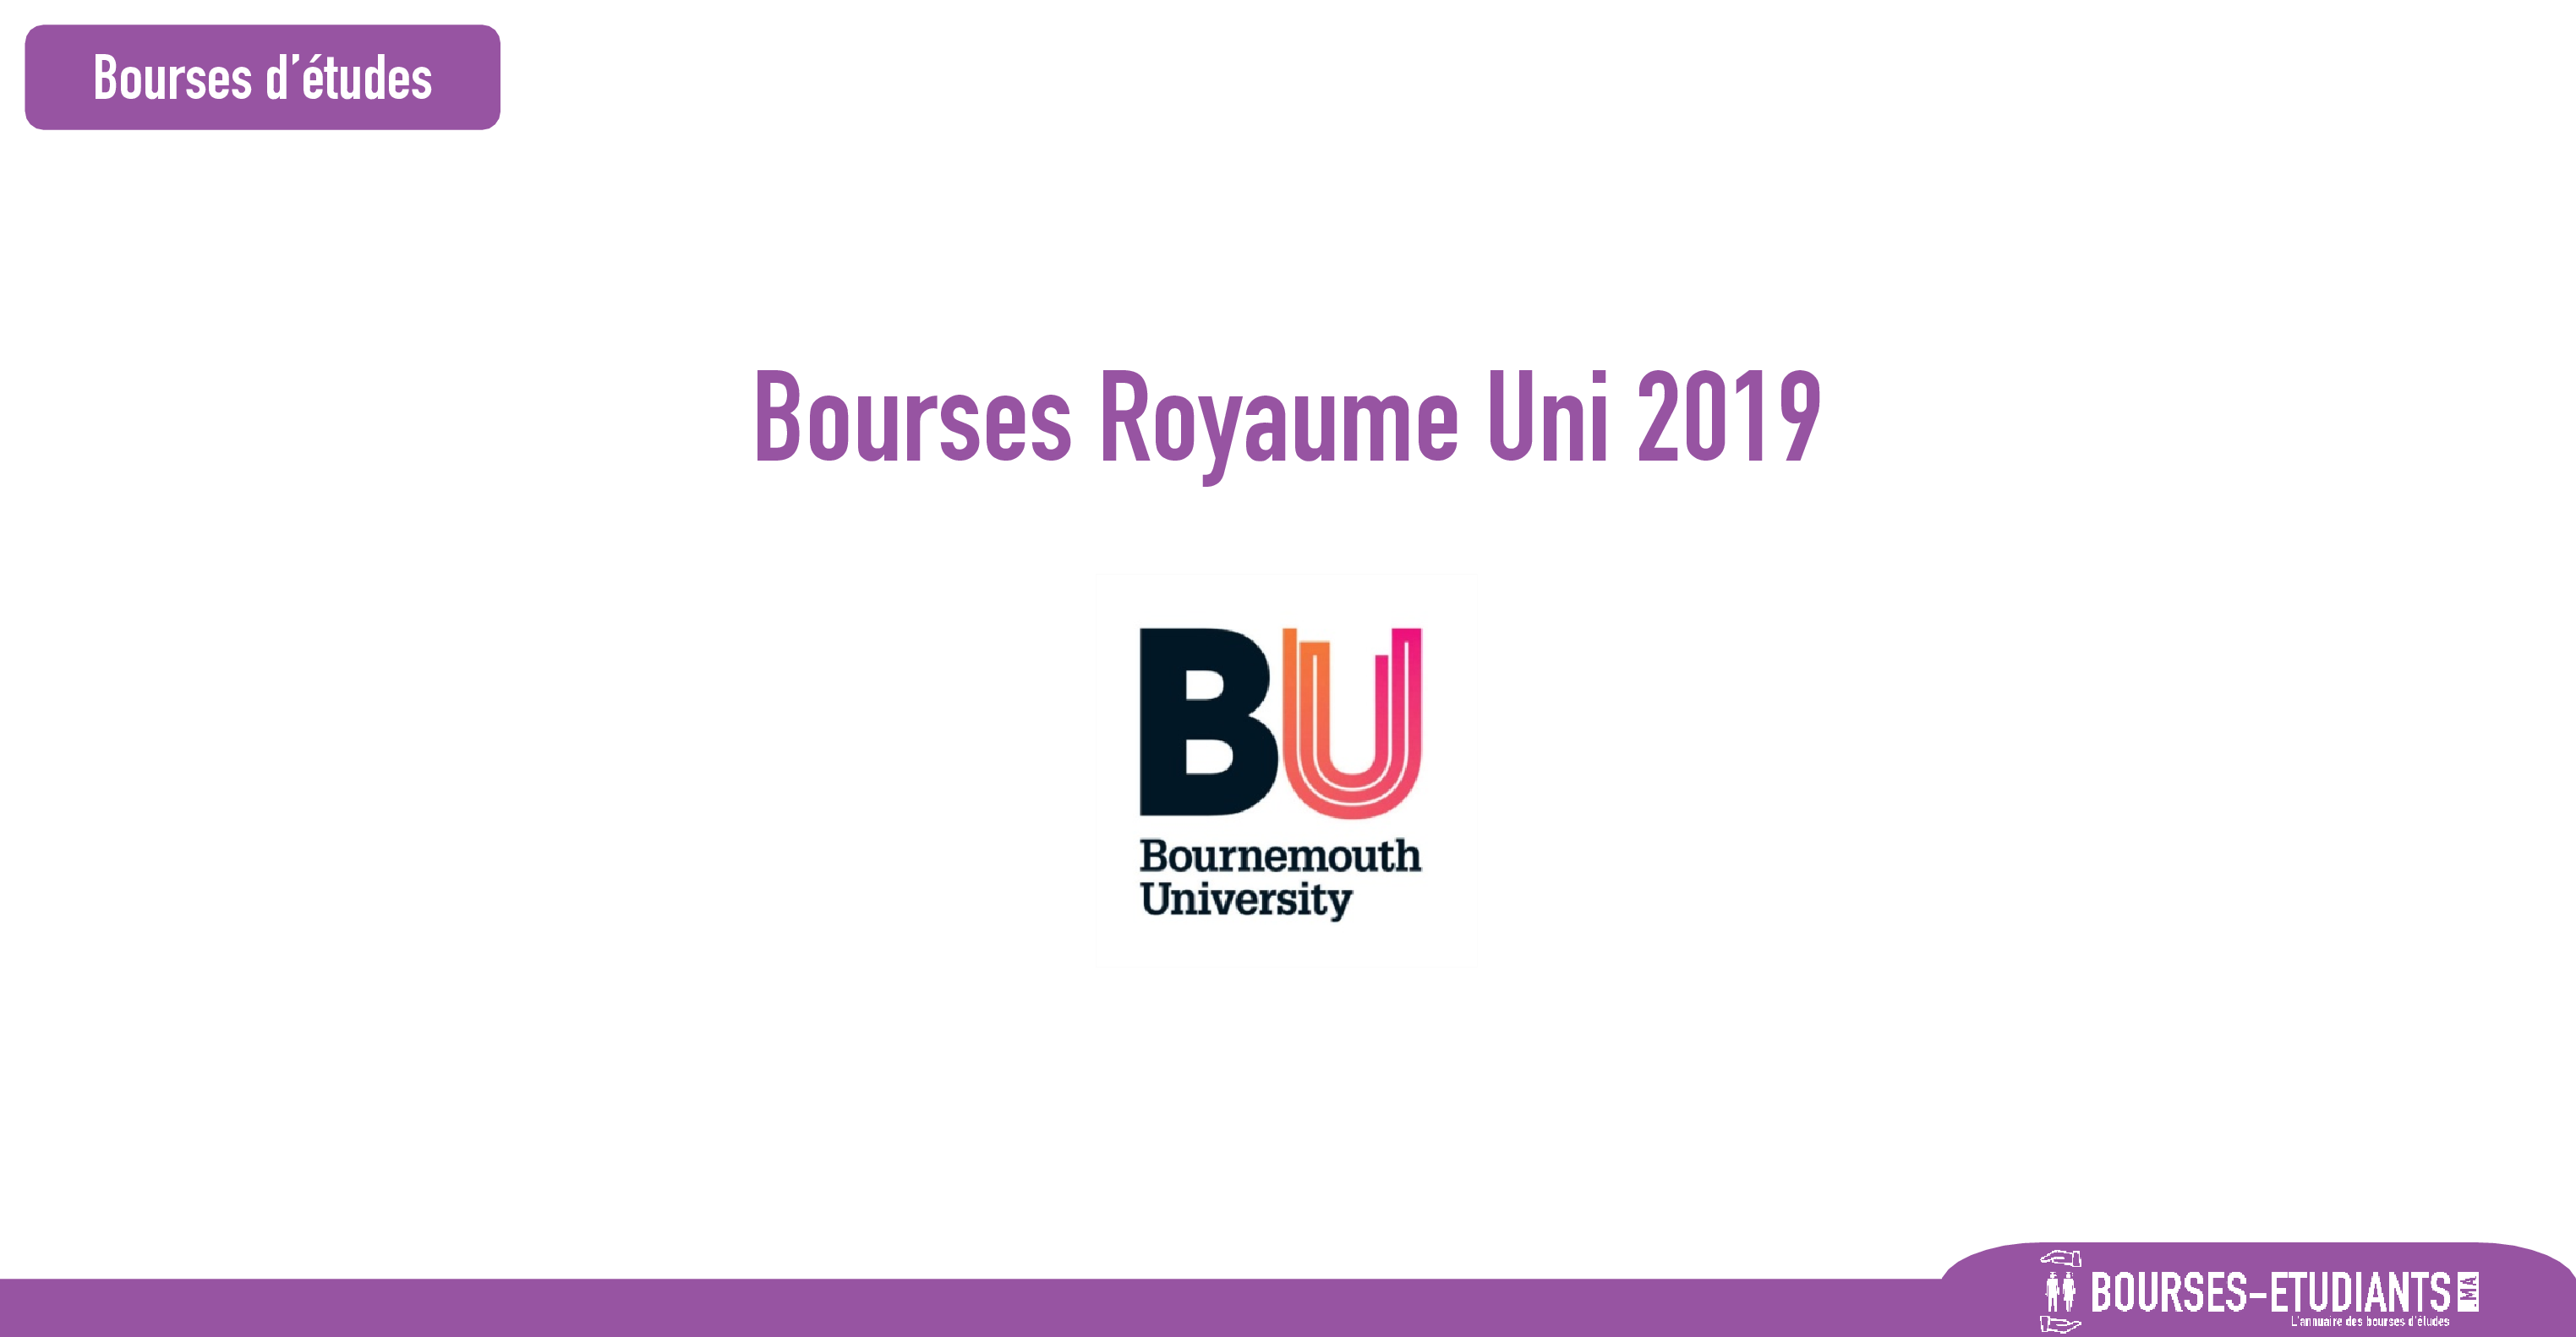 bourse Bournemouth University